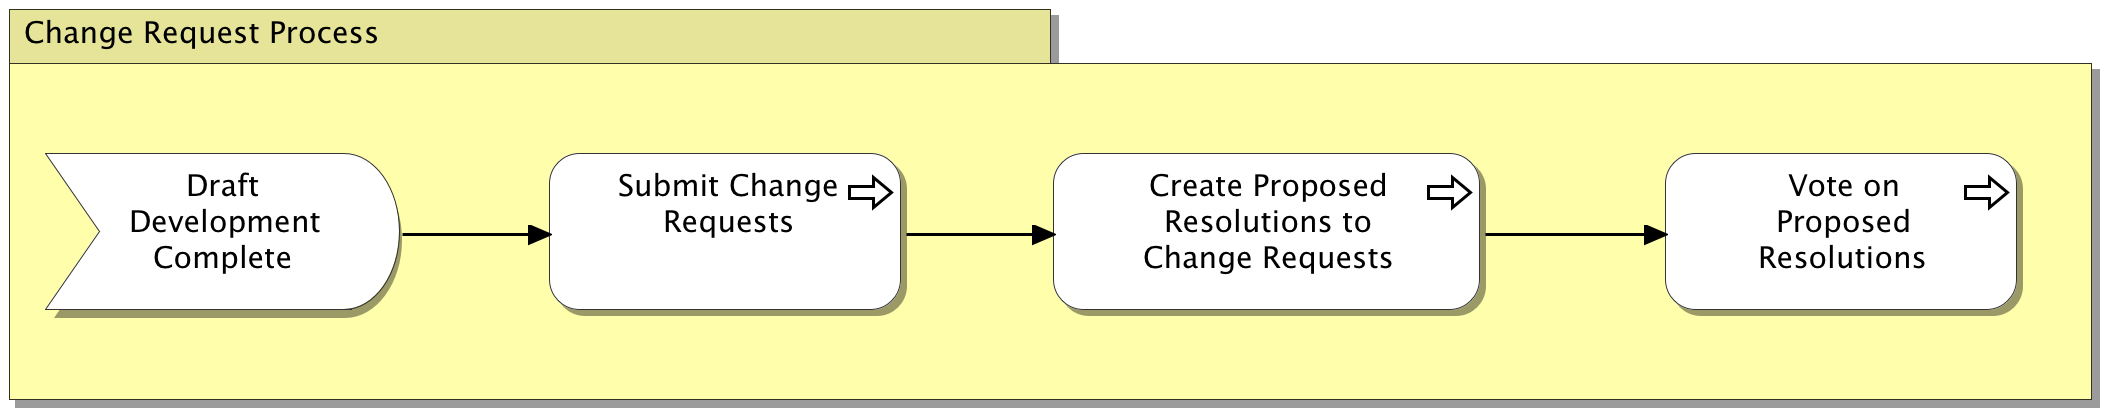 Change Request Process Diagram